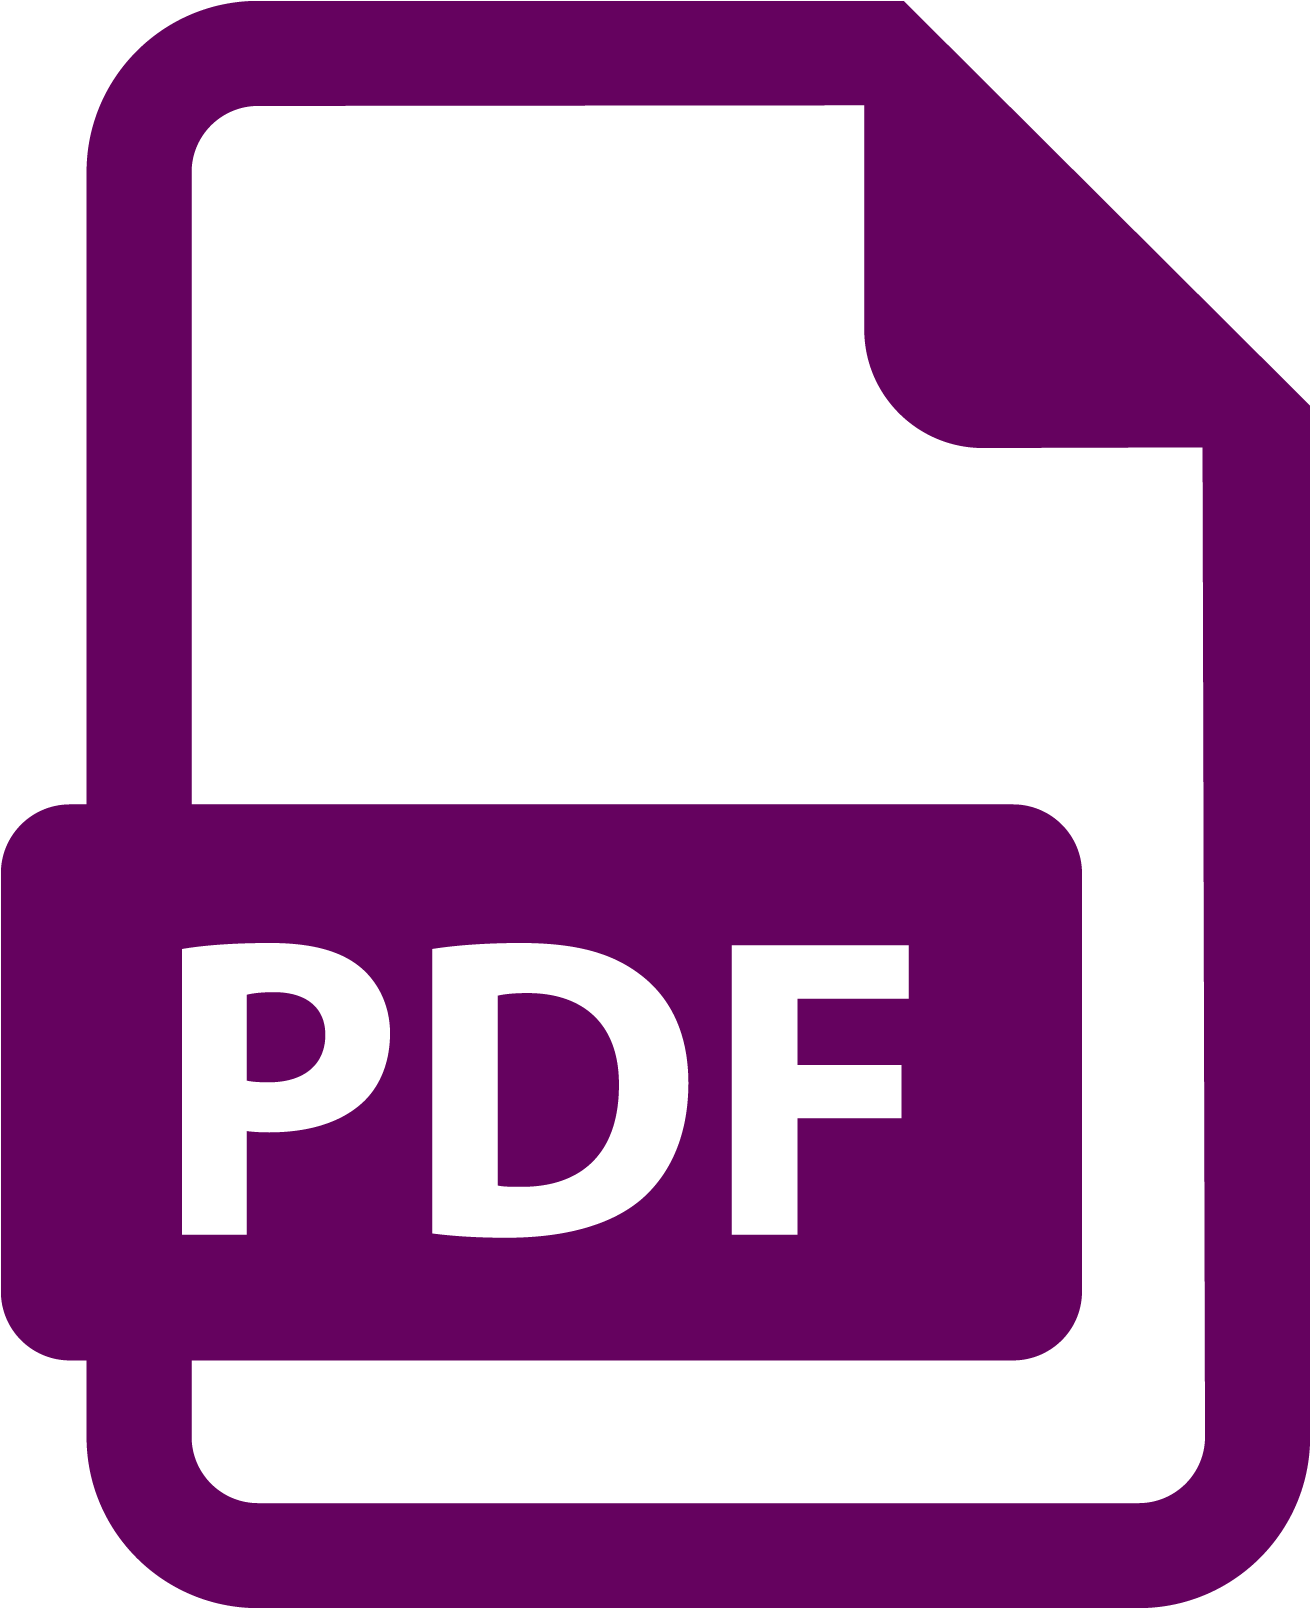 Pdf icon. Pdf. Значок пдф файла. Логотип pdf. Иконка документа pdf.